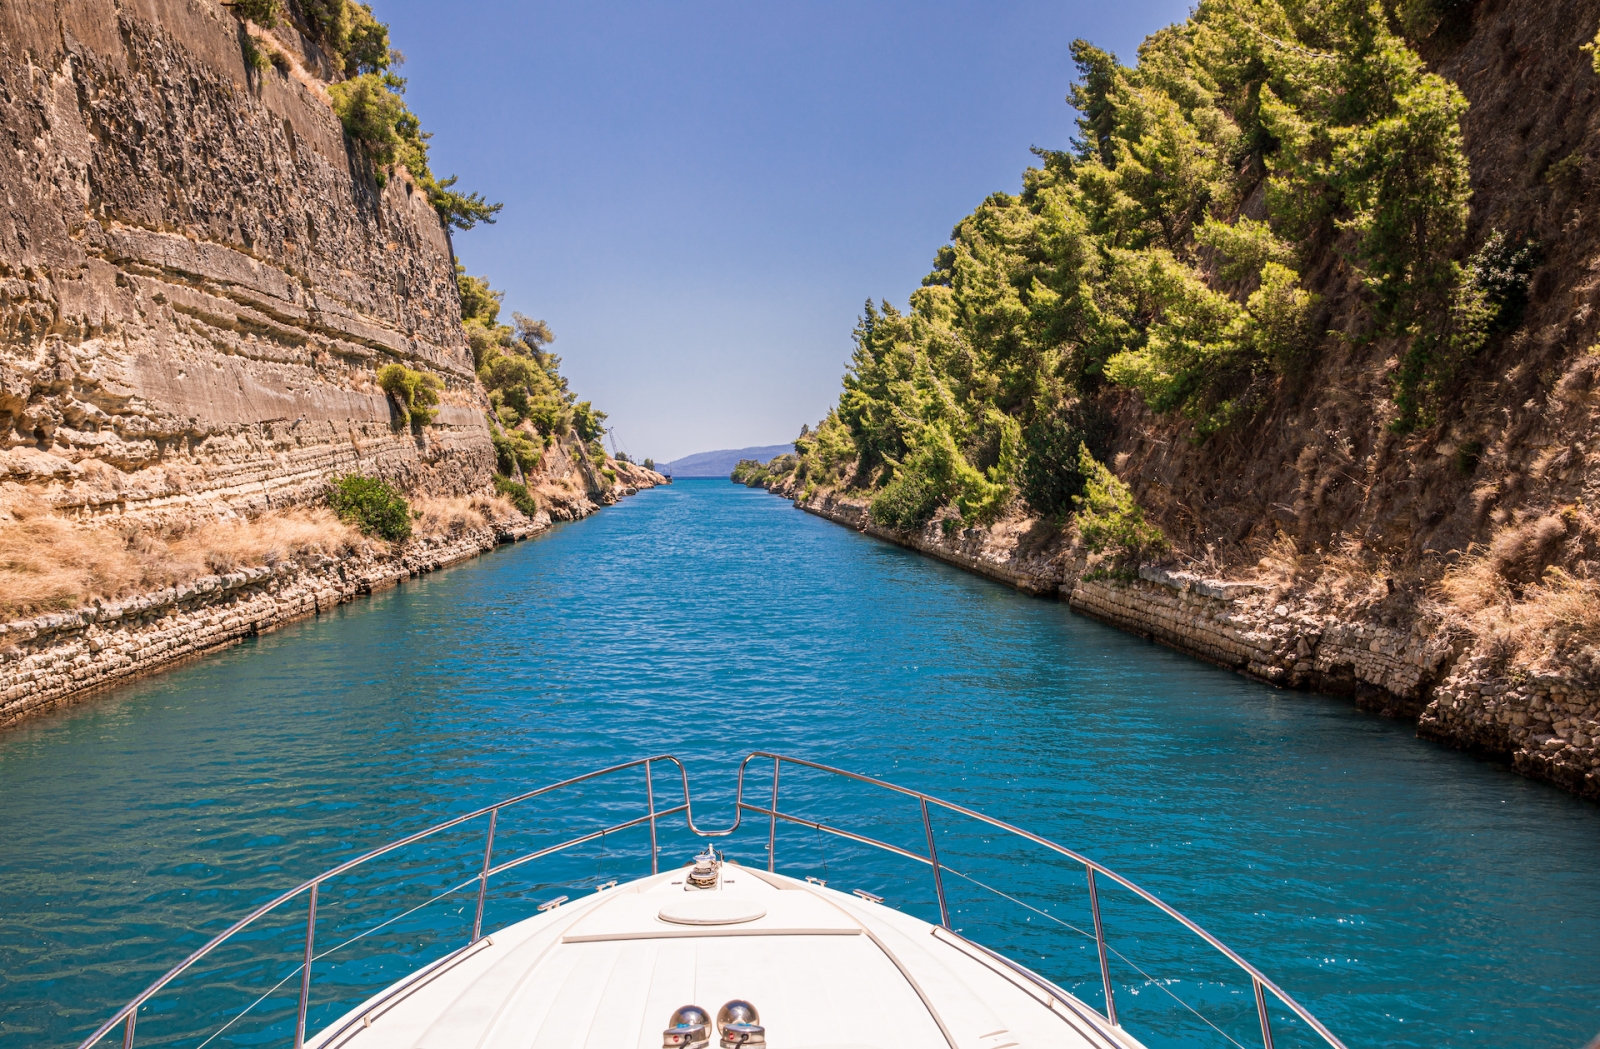 Durchquerung des Kanals von Korinth mit einer Yacht, Griechenland.  Der Kanal von Korinth verbindet den Golf von Korinth mit dem Saronischen Golf in der Ägäis.